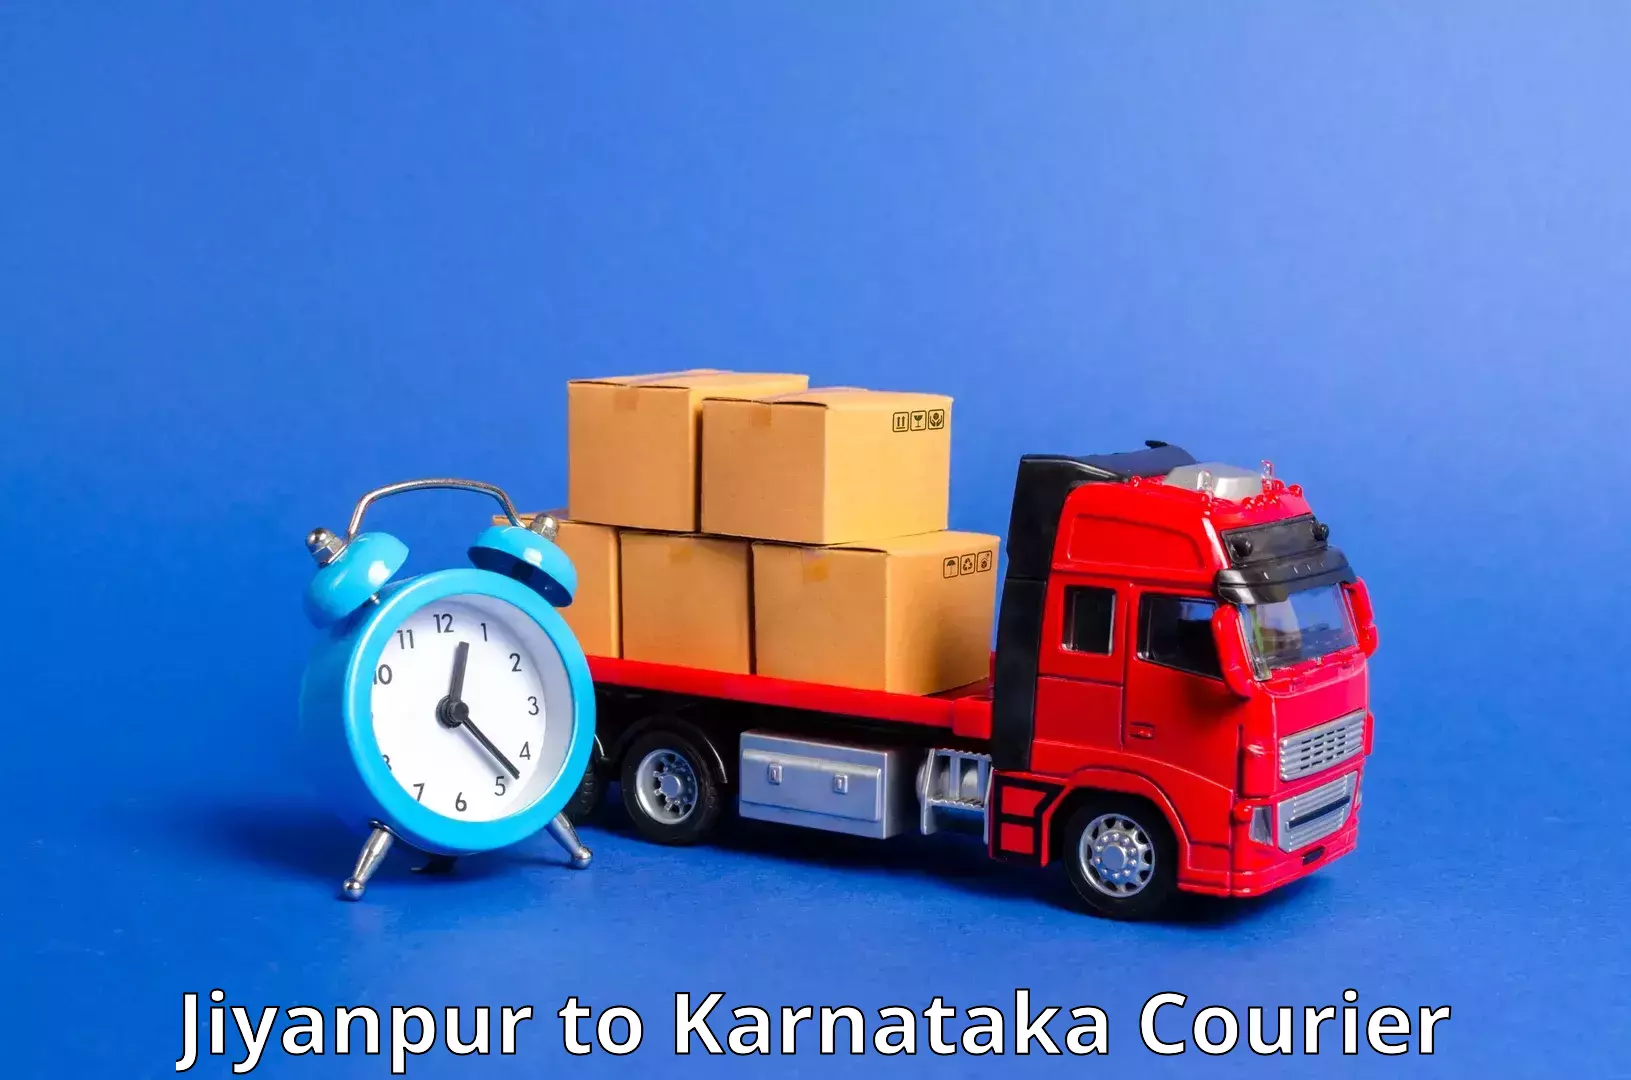 Smart shipping technology Jiyanpur to Mangalore